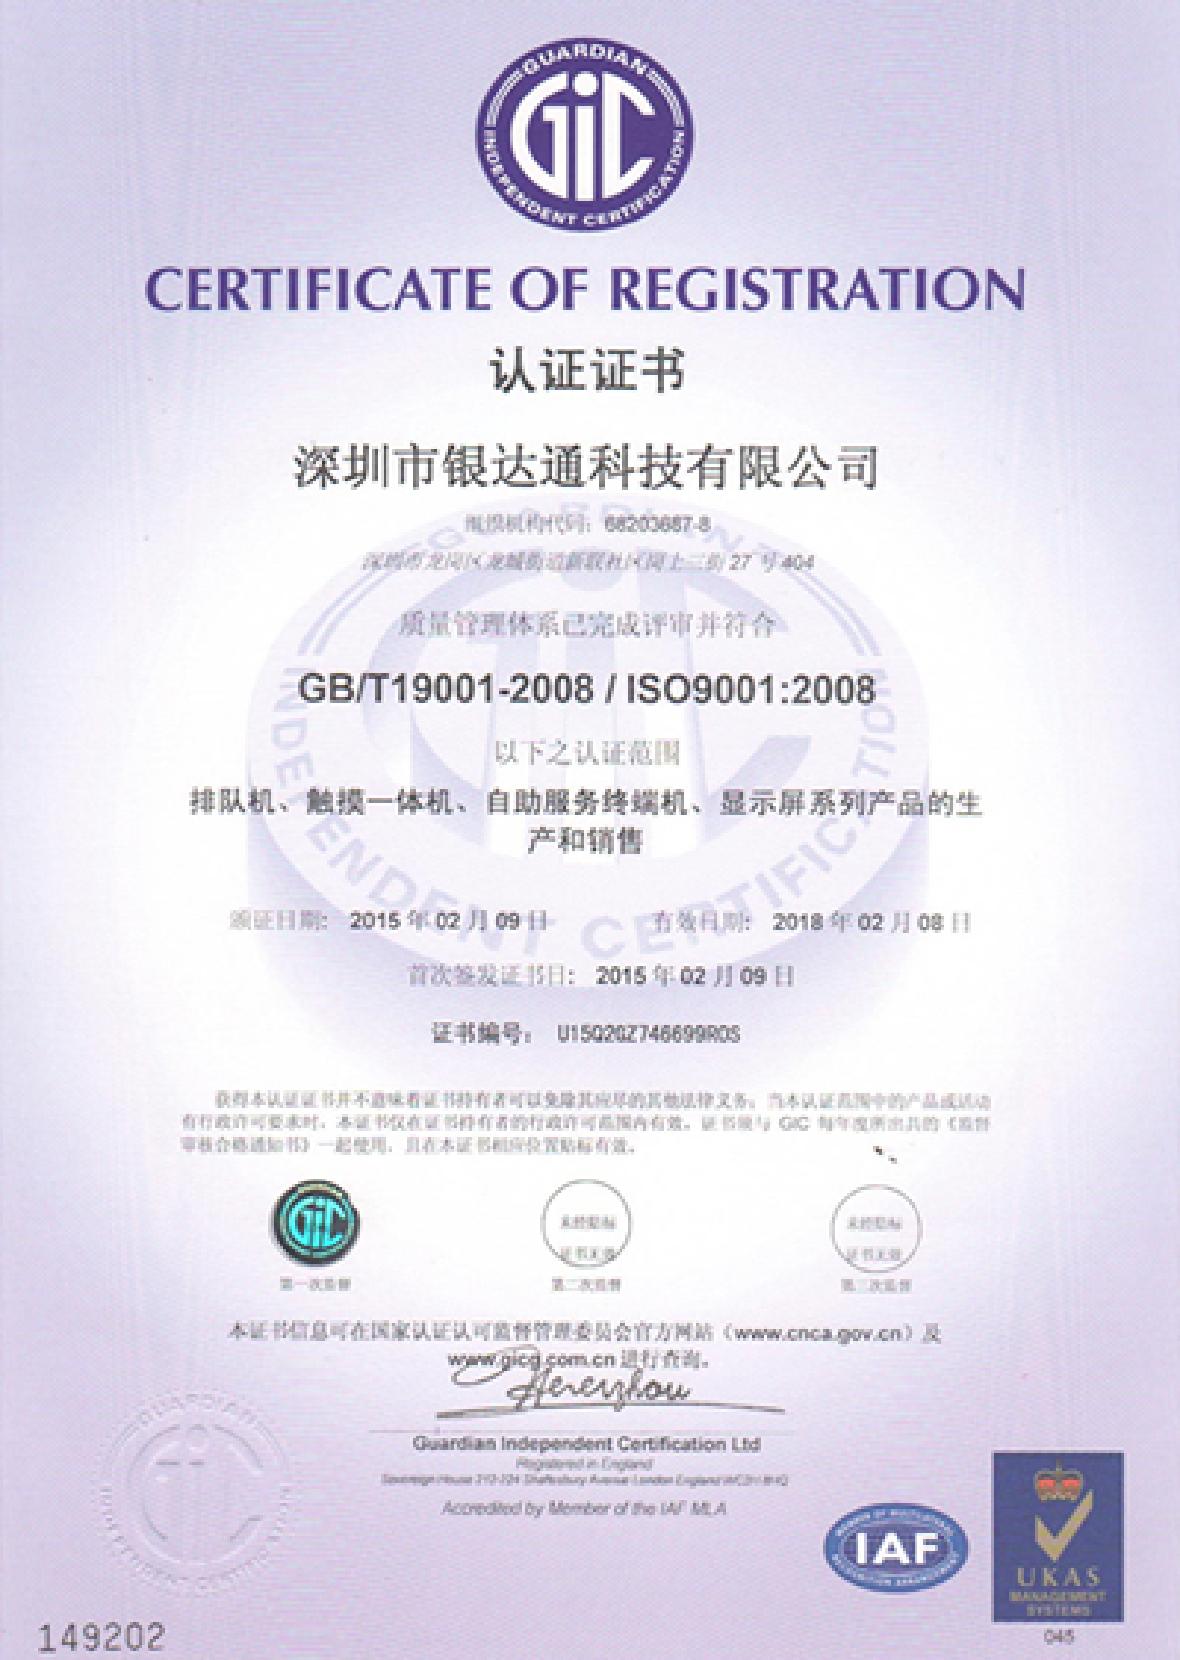 Yindatong ISO9001 Certificate